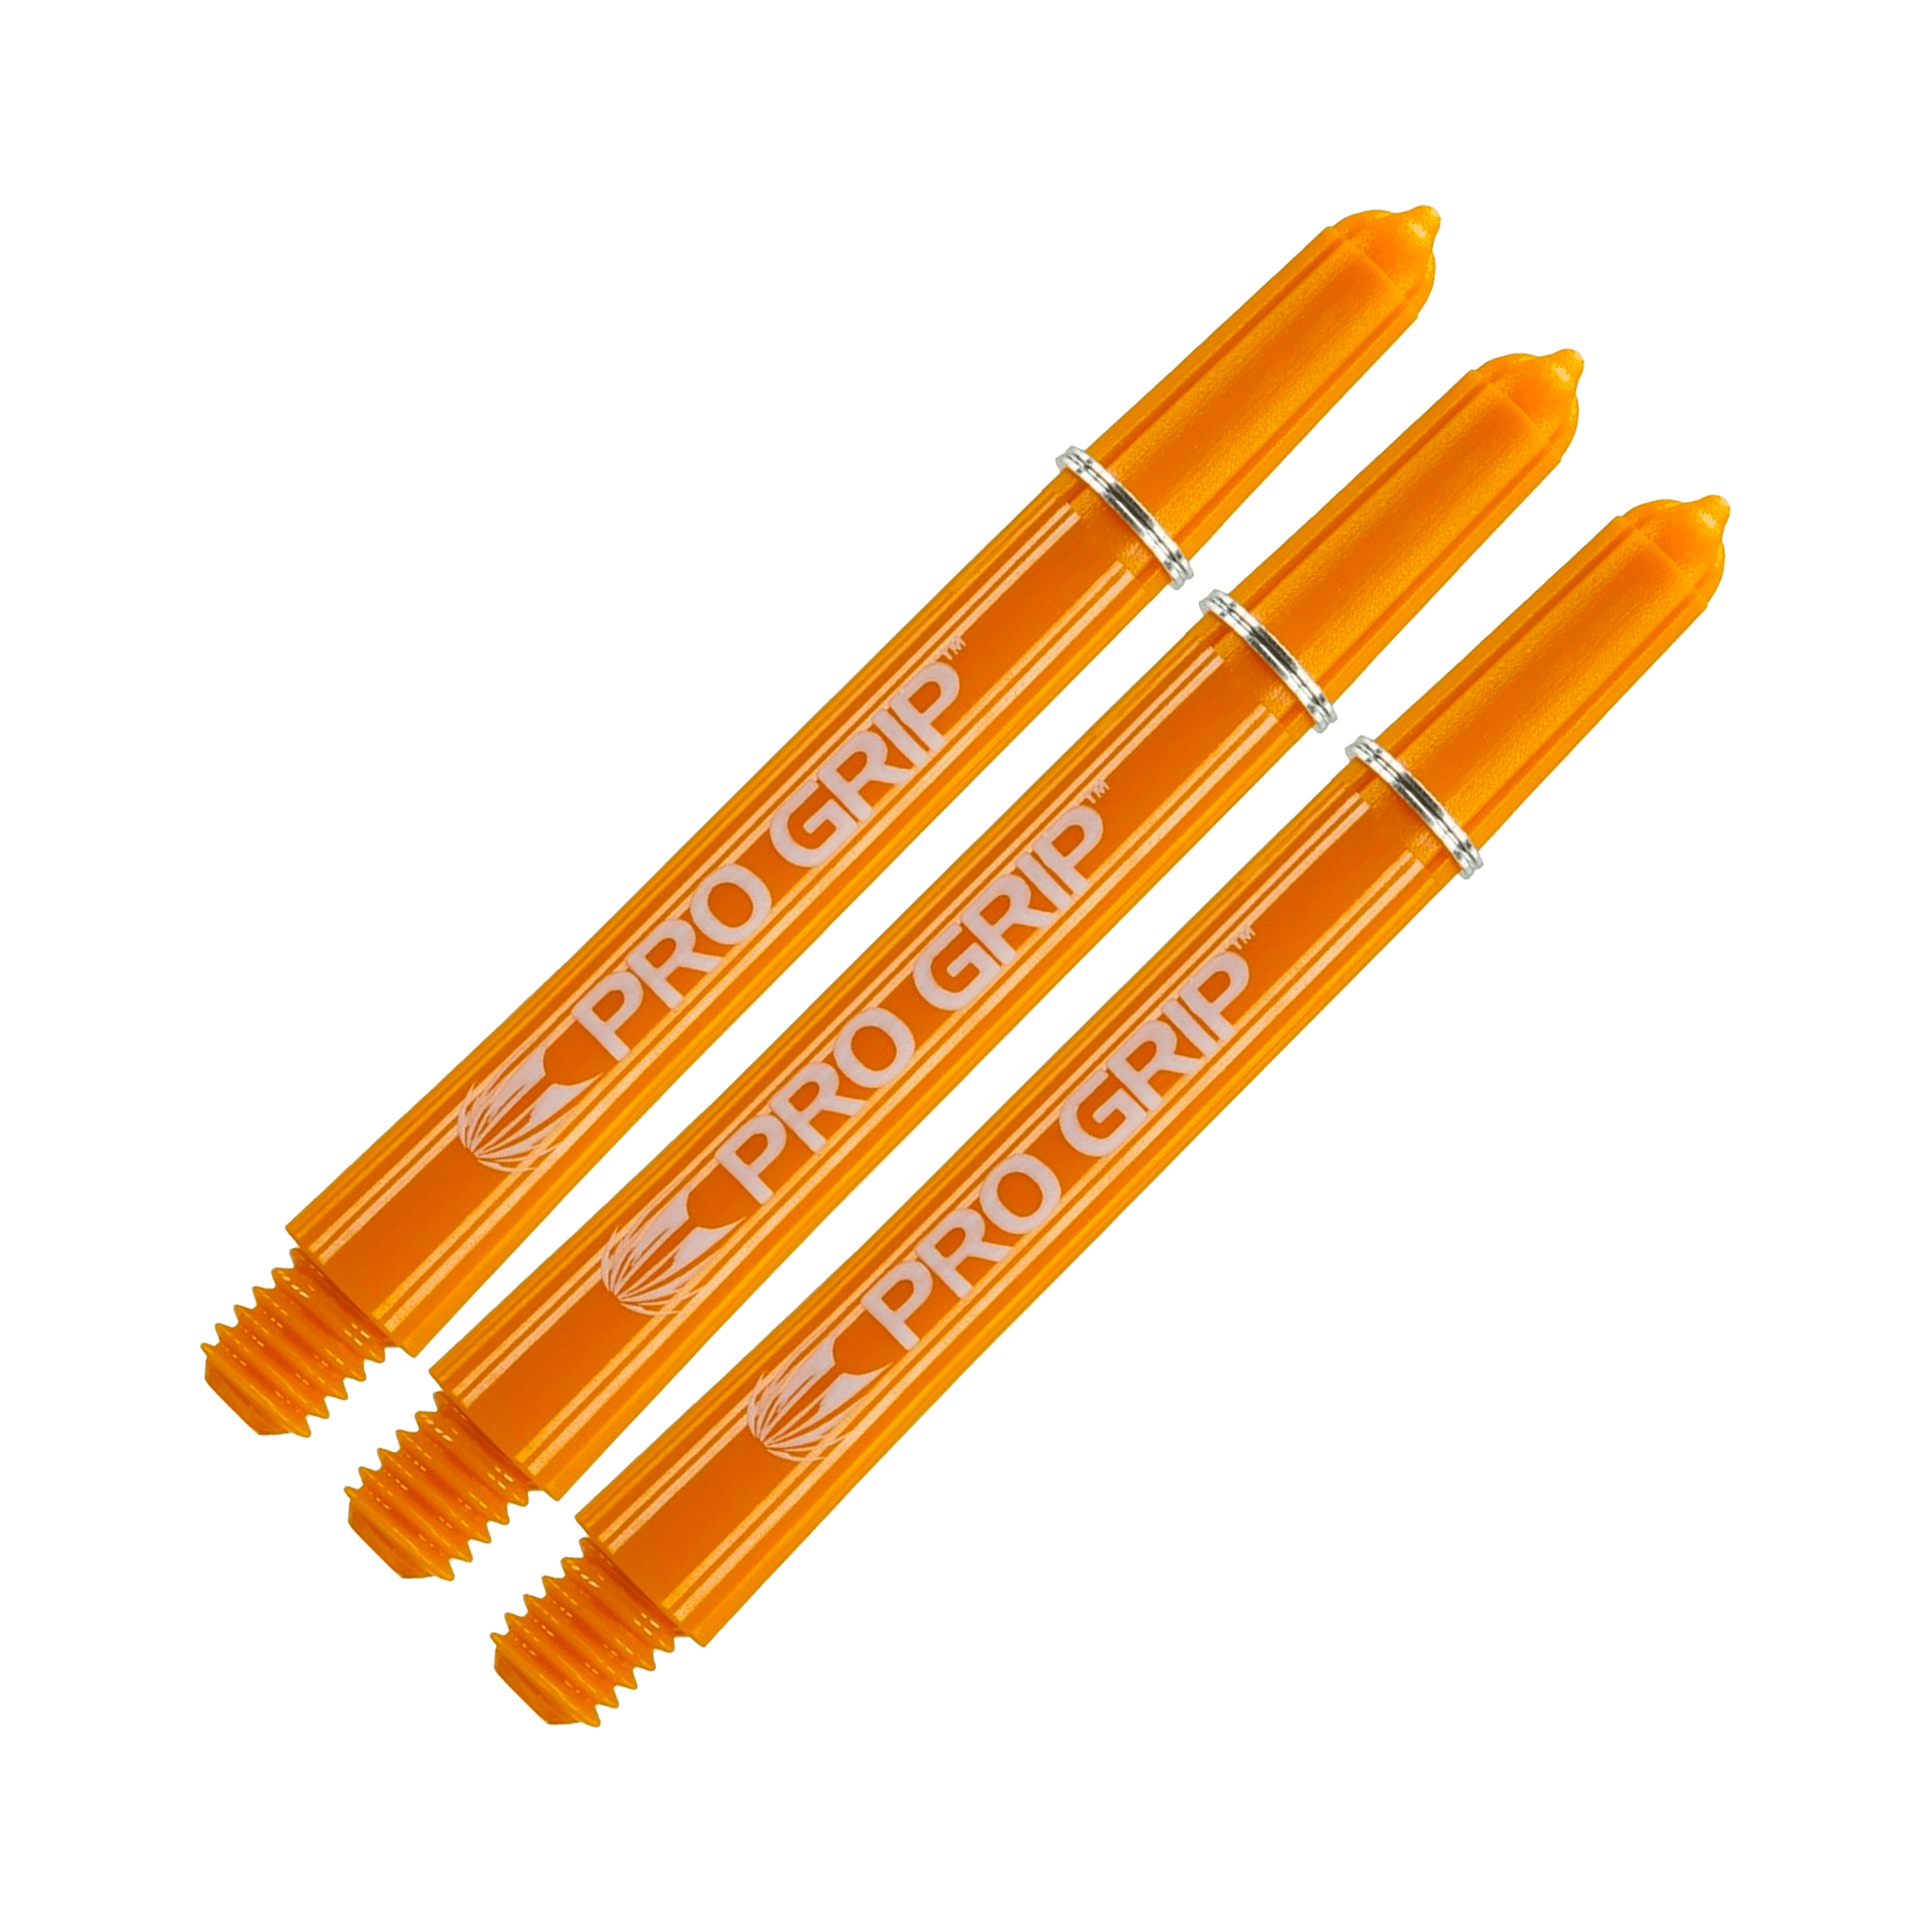 Target Pro Grip Multi Pack - Nylon Dart Shafts (3 Sets) Orange / Medium (48mm) Shafts